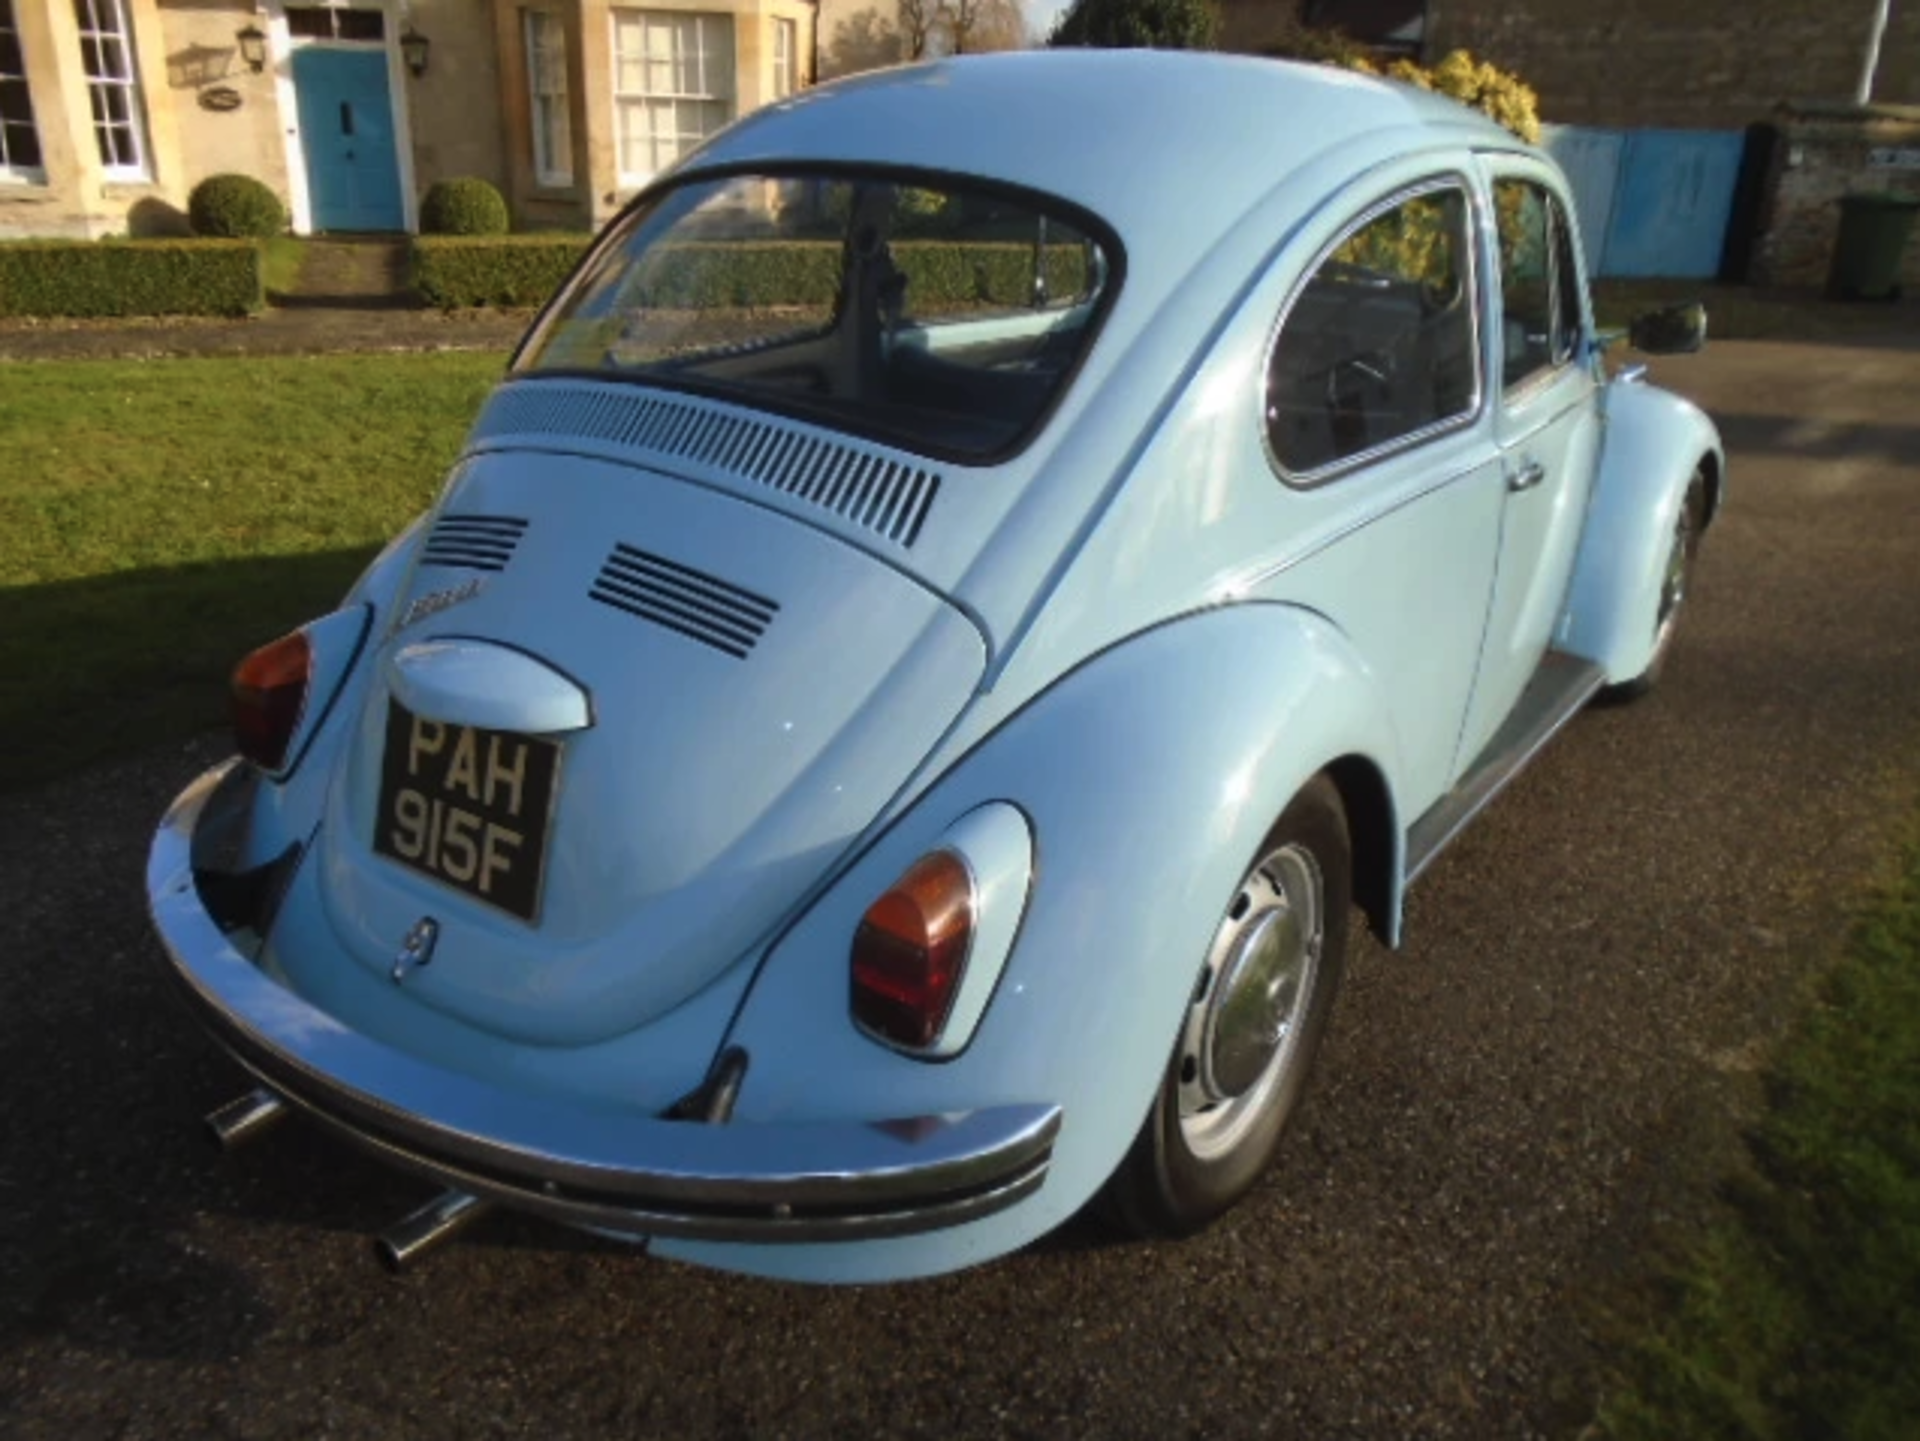 1968 Volkswagen Beetle 1500 - Image 4 of 6